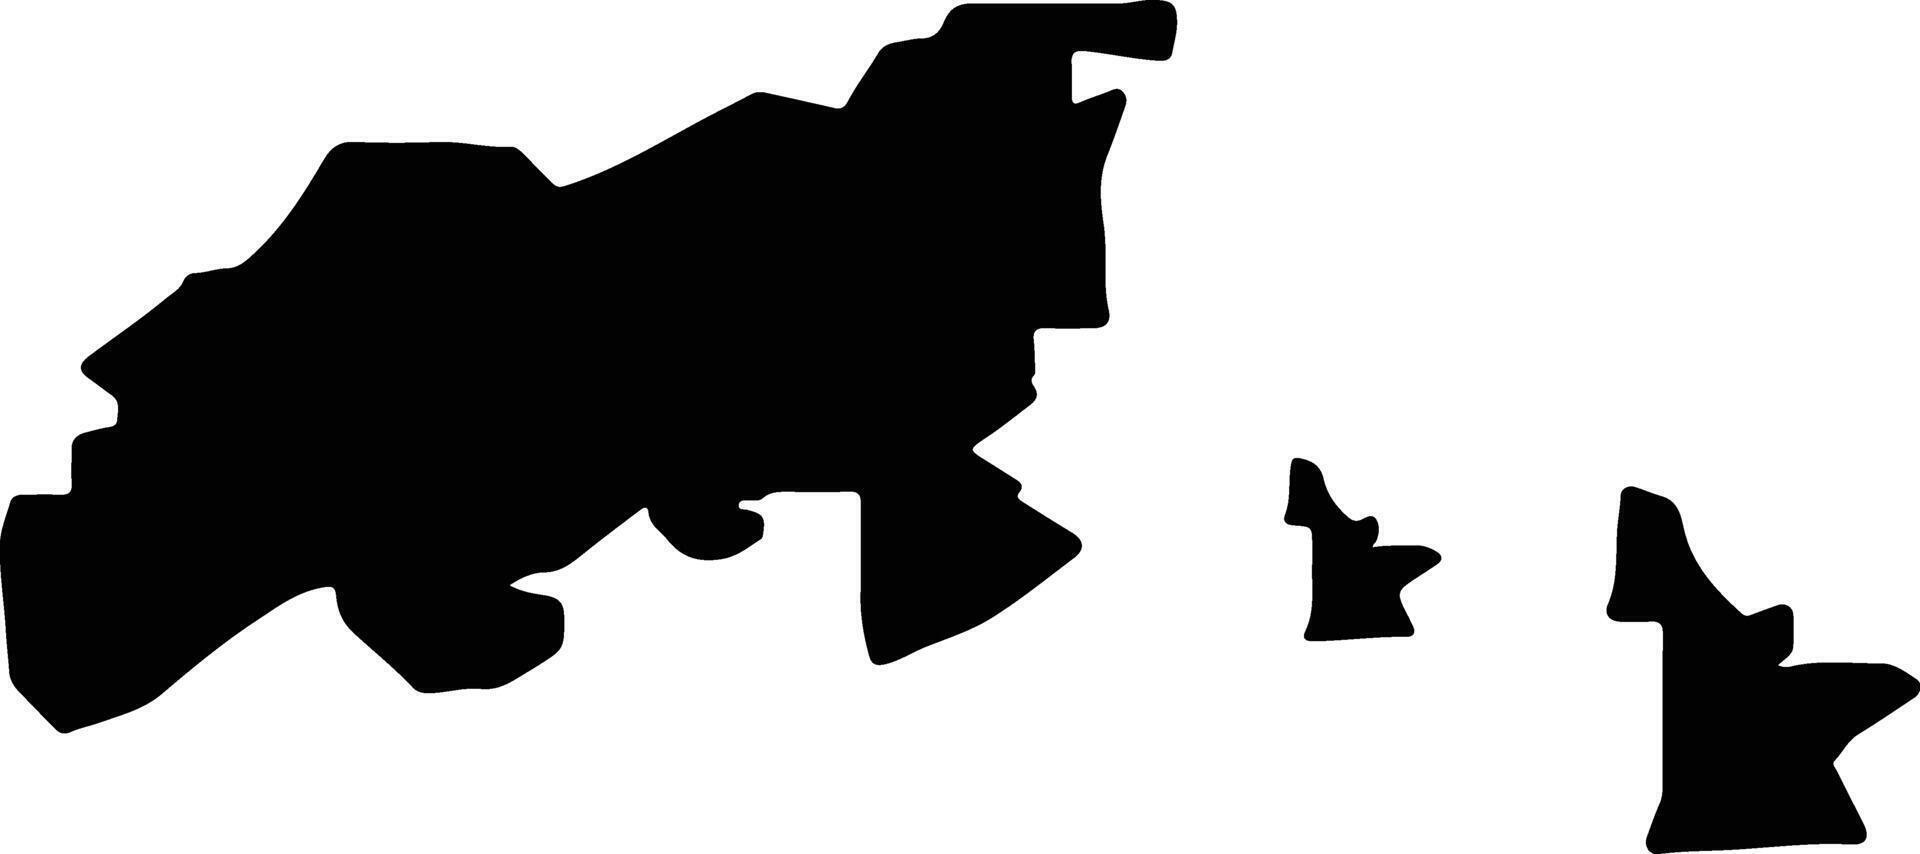 Islands Hong Kong silhouette map vector